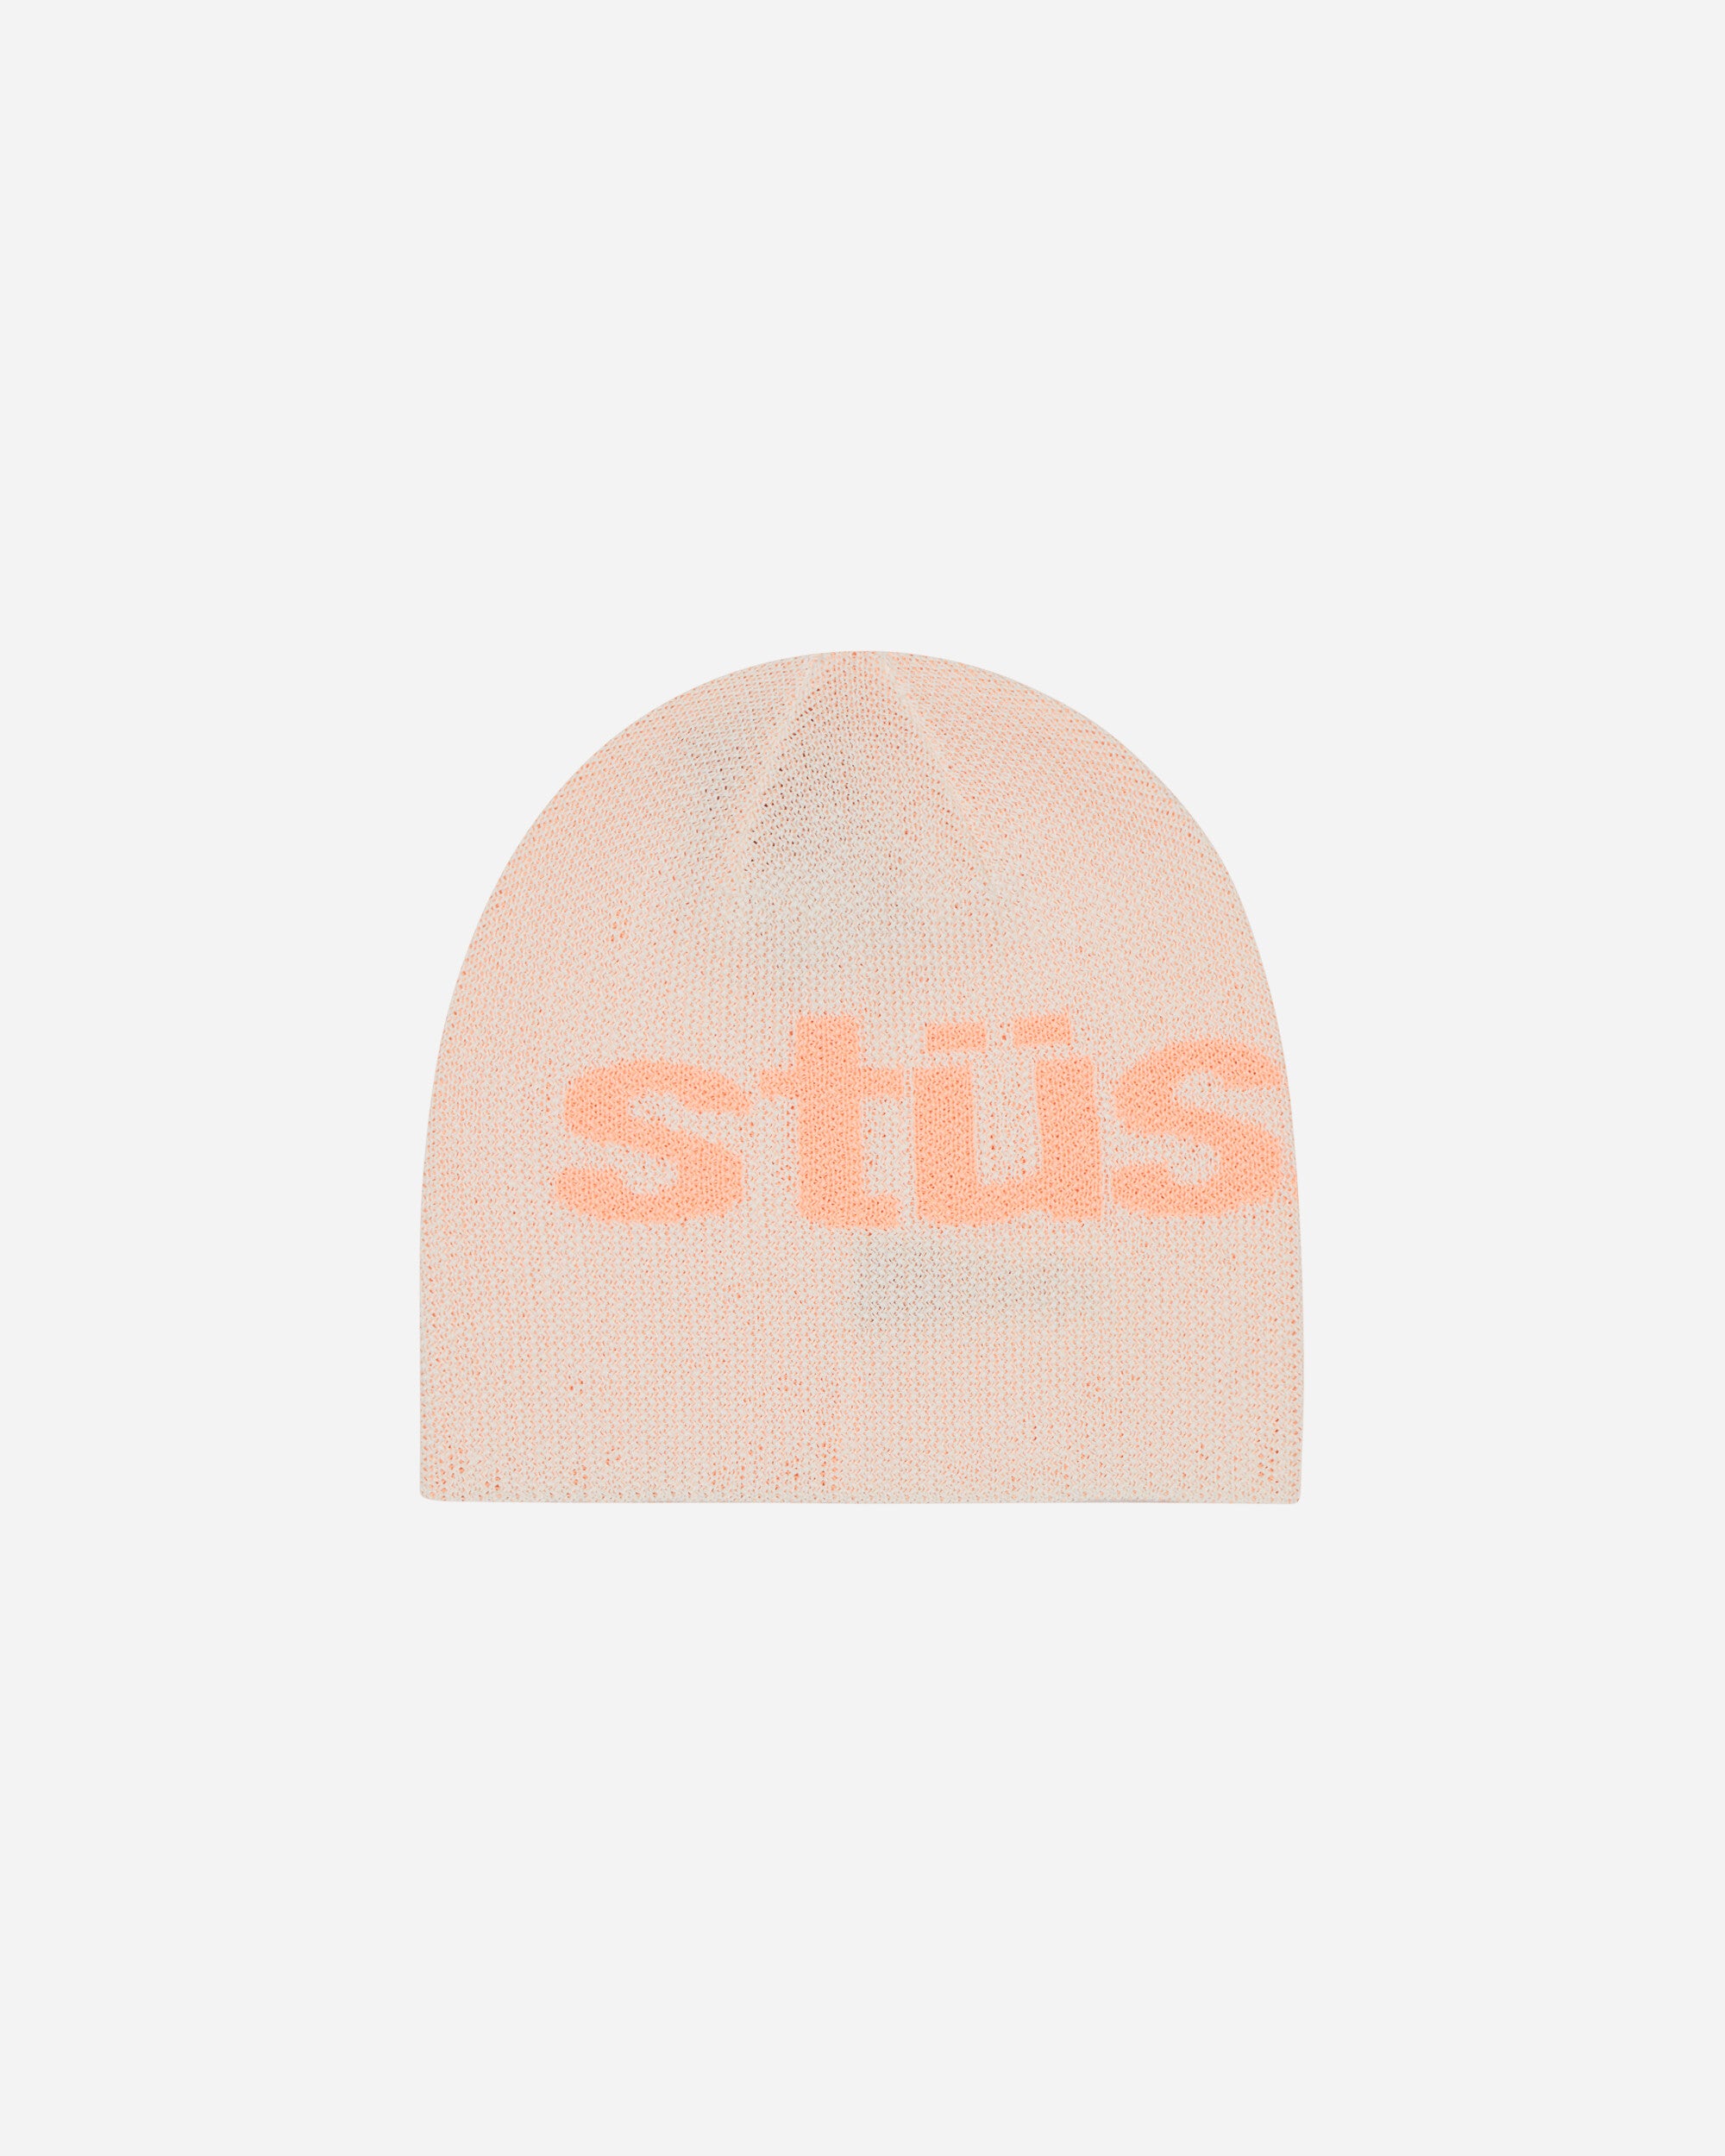 Stüssy Helvetica Uv Skullcap White Hats Beanies 1321210 1201